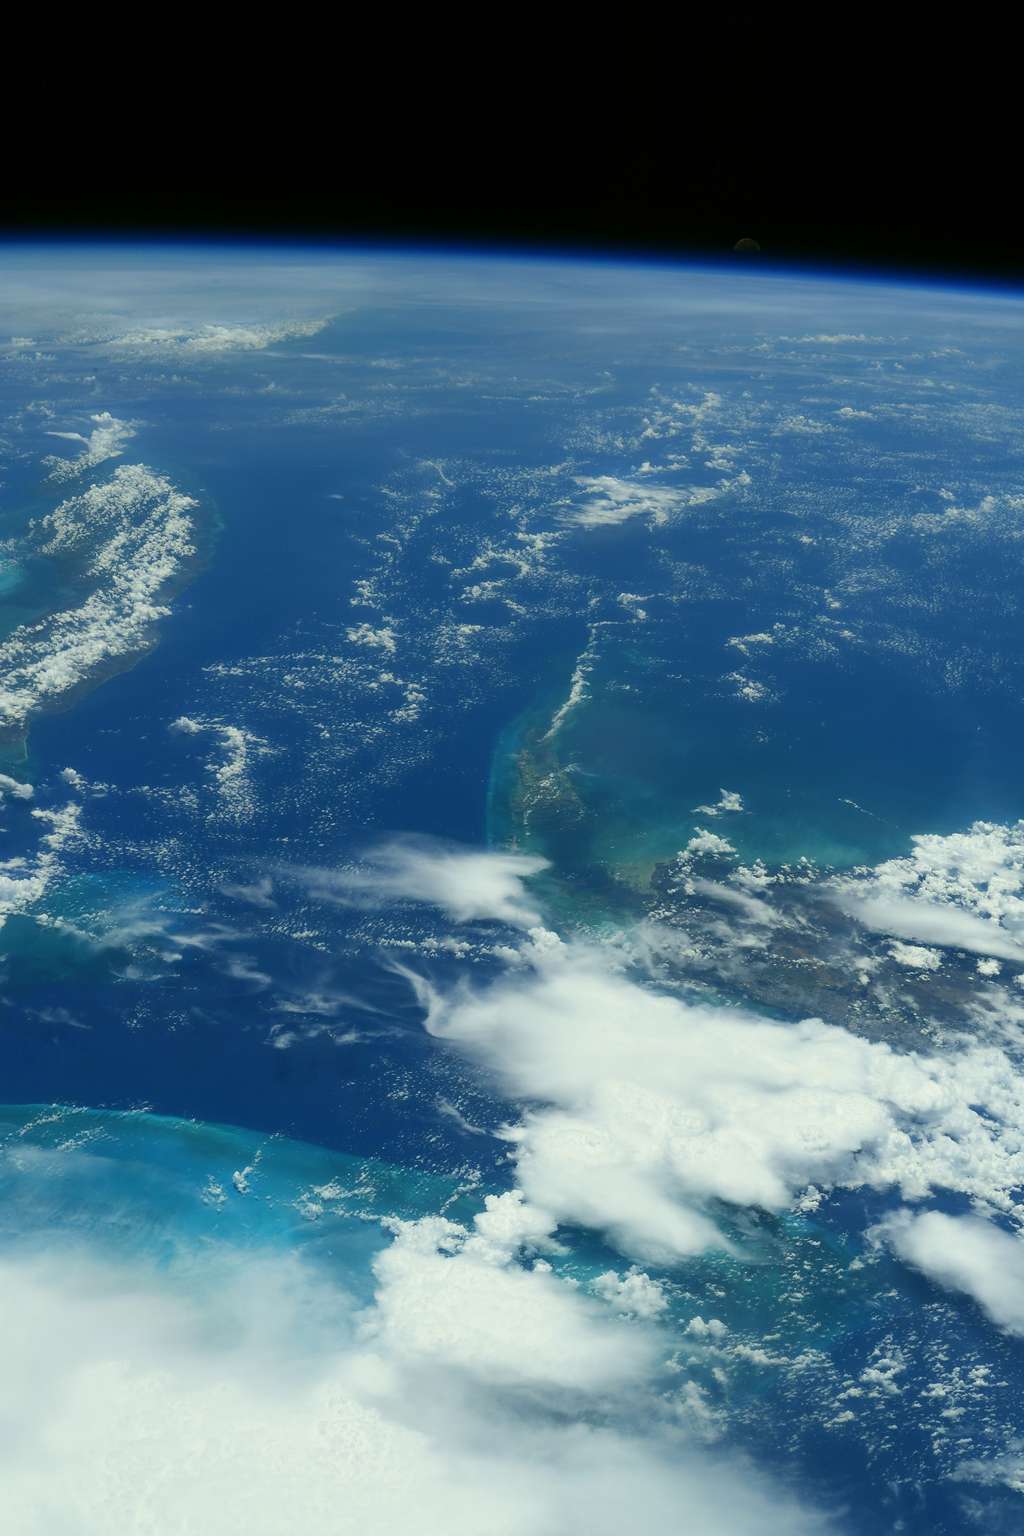 Les Bahamas, photographié par l'astronaute français, en juillet 2021. © Esa, Nasa, Thomas Pesquet